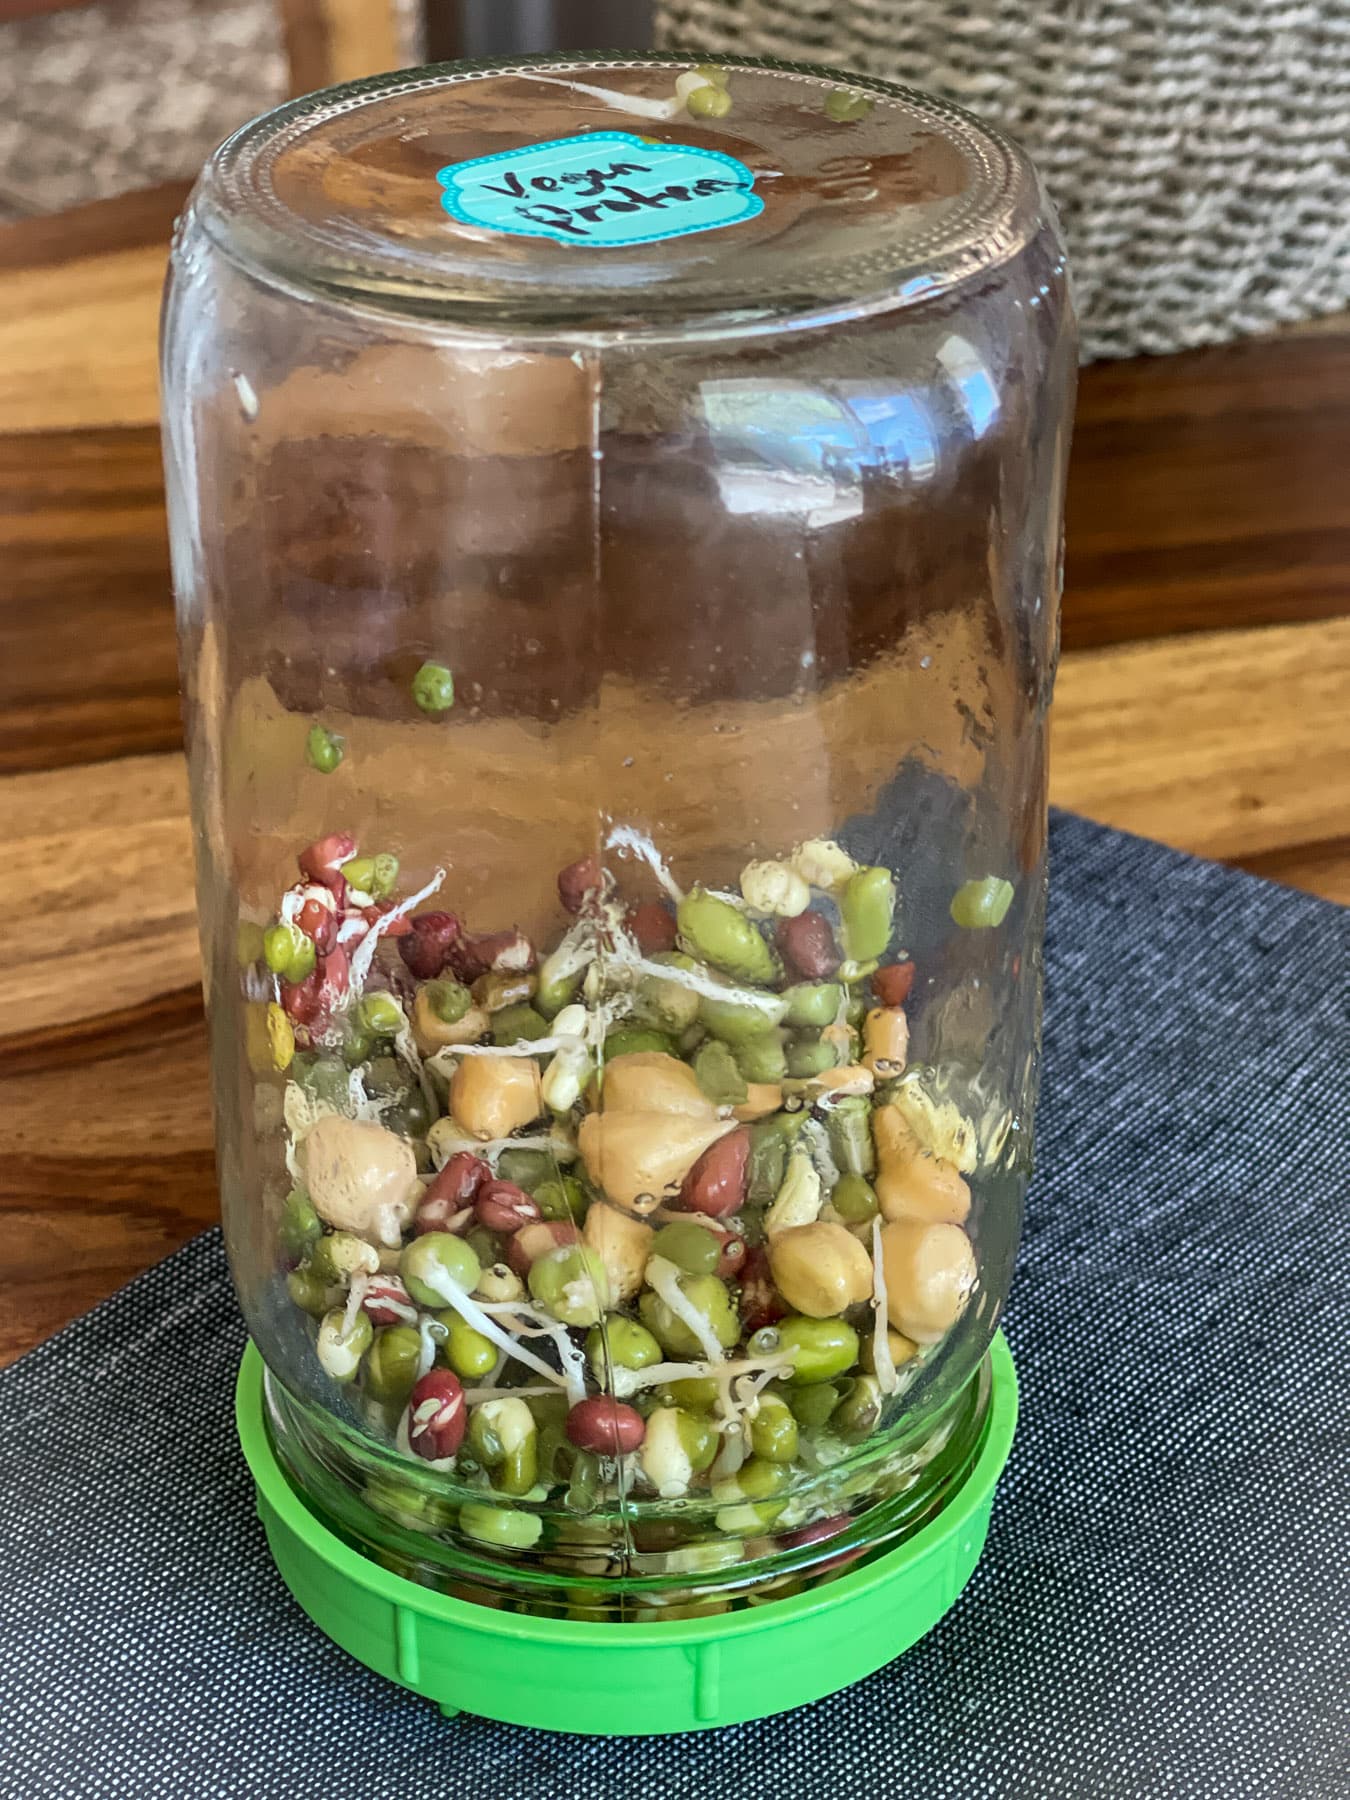 Sprouts adzuki beans